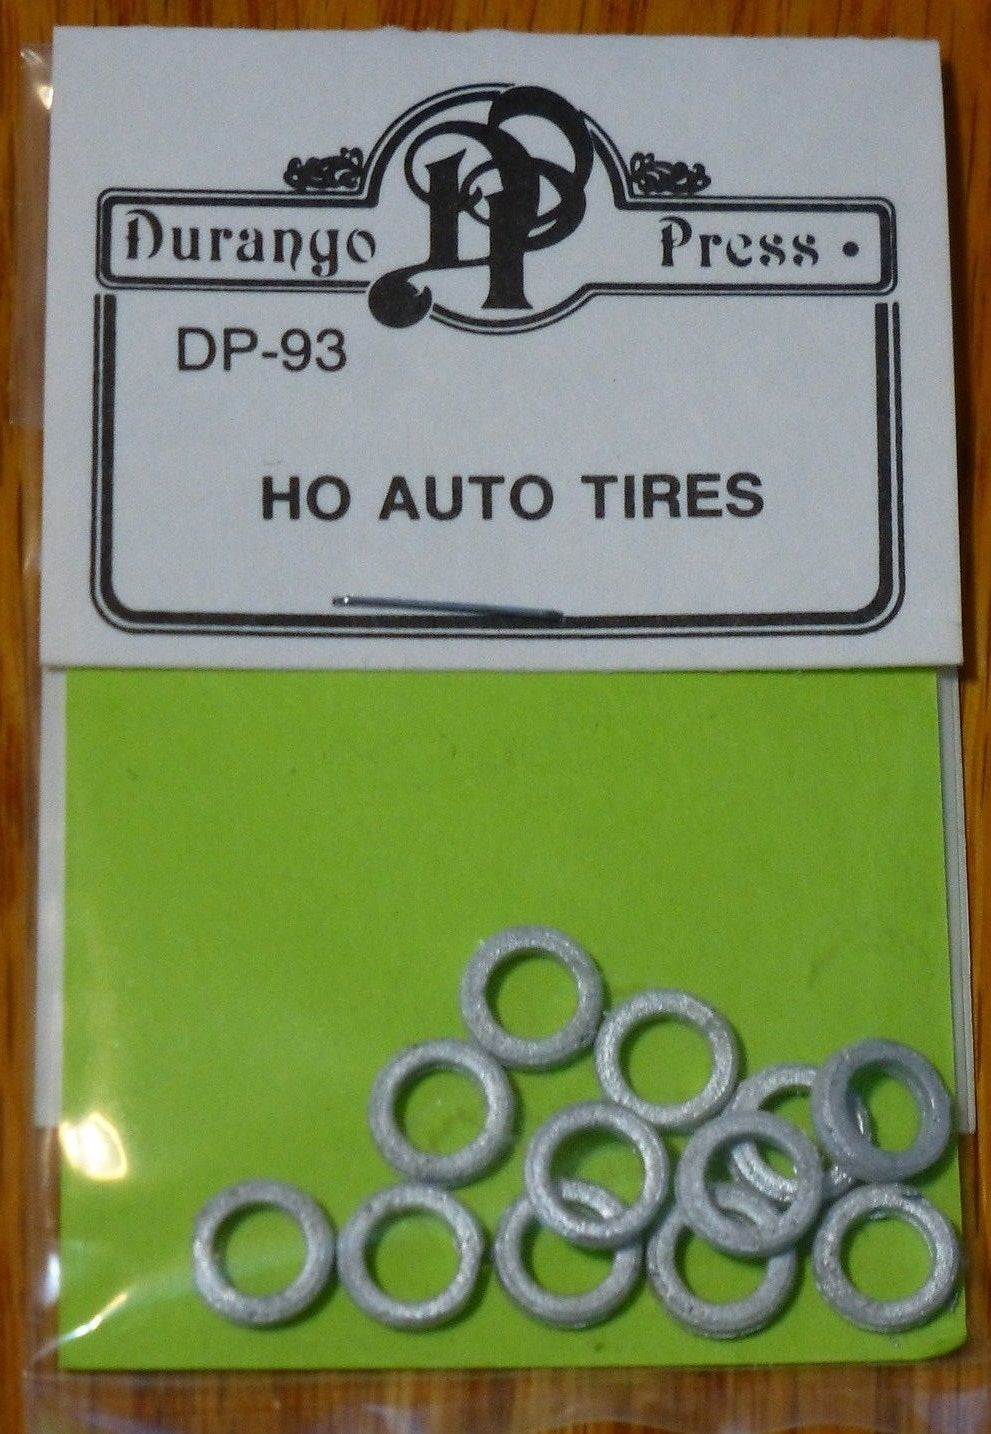 Durango Press 93 Ho Auto Tires